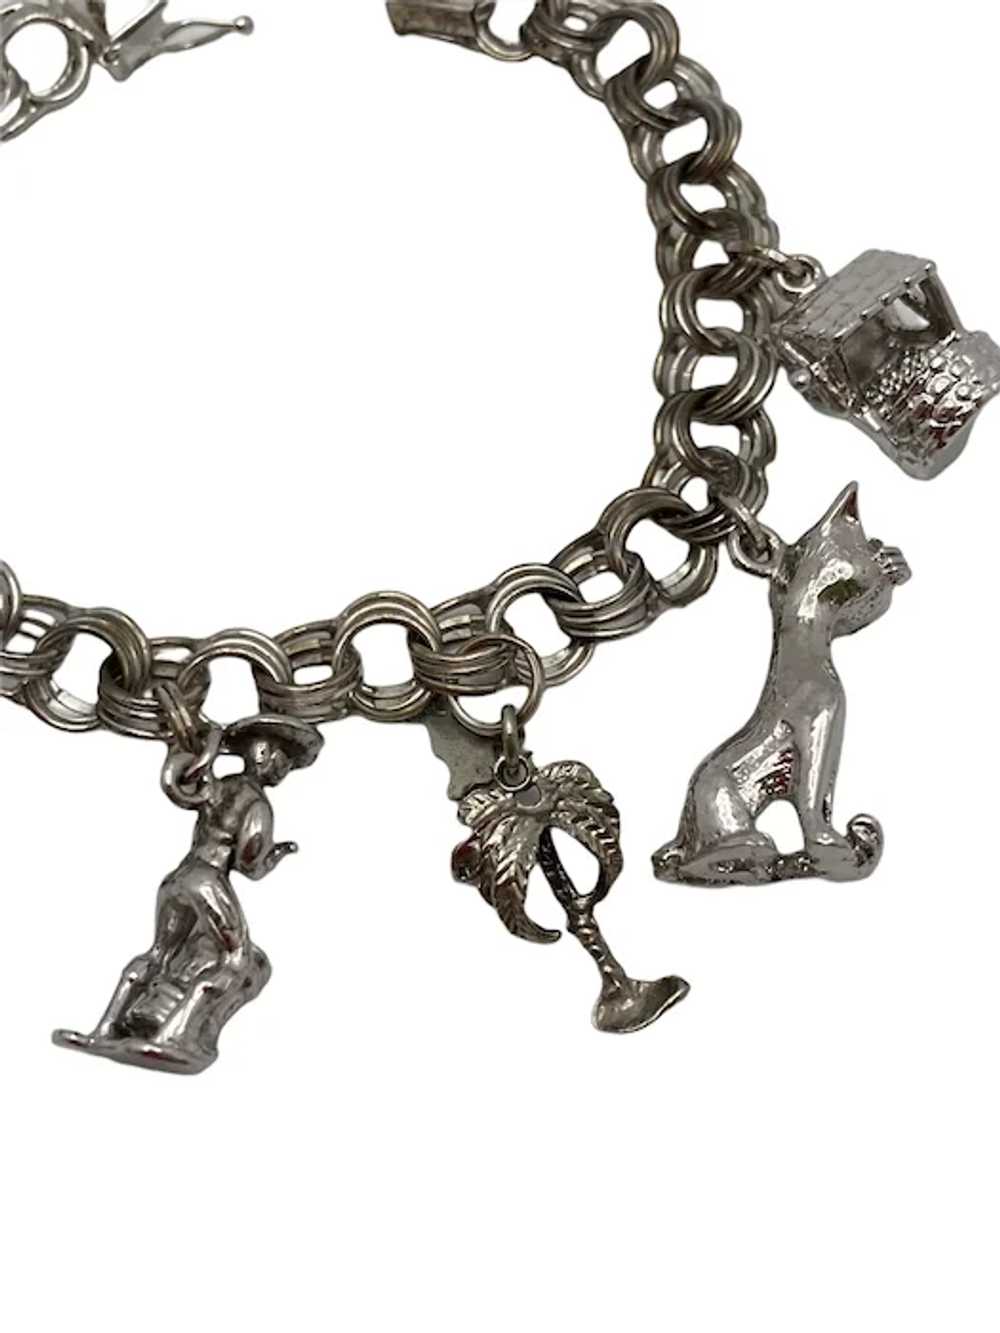 Vintage Sterling Silver Link Charm Bracelet - image 7